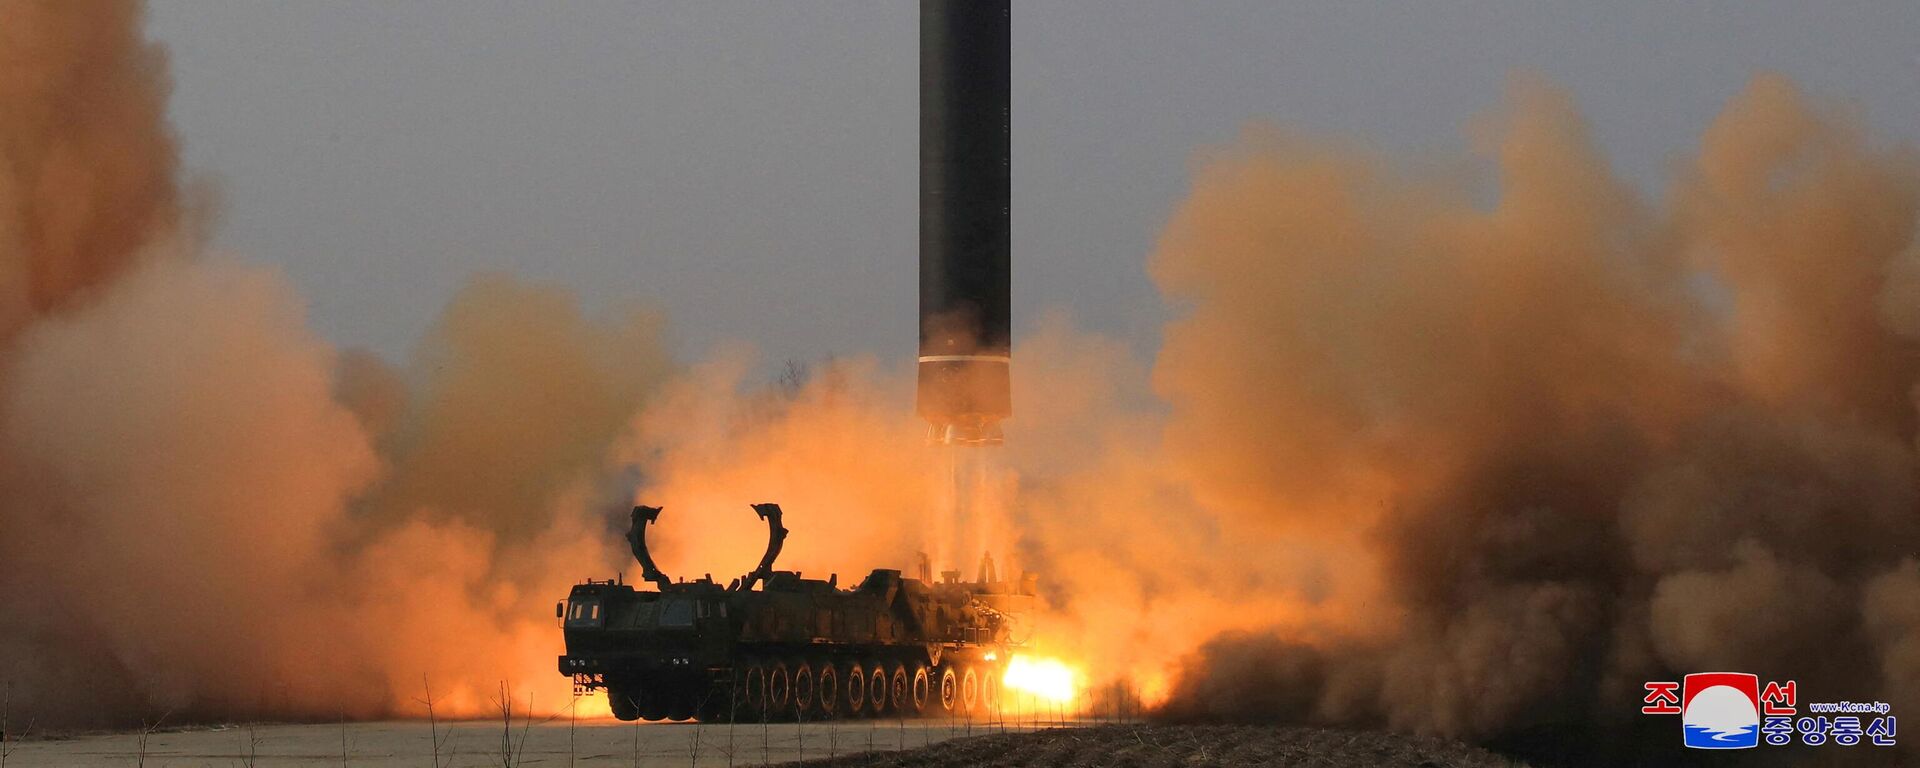 67.5 dakika boyunca maksimum 6248.5 km irtifada 1090 km menzille uçan Hwasong-17, Kuzey Kore'nin önceki kıtalararası balistik füze (ICBM) denemelerinden farklı olarak, doğrudan bir taşıyıcı, erektör, fırlatıcı (TEL) aracından fırlatıldı. Reuters'e konuşan uzmanlar Hwasong-17'yi, 'canavar füze', 'dünyadaki en büyük mobil, sıvı yakıtlı ICBM' diye niteledi.  - Sputnik Türkiye, 1920, 25.03.2022